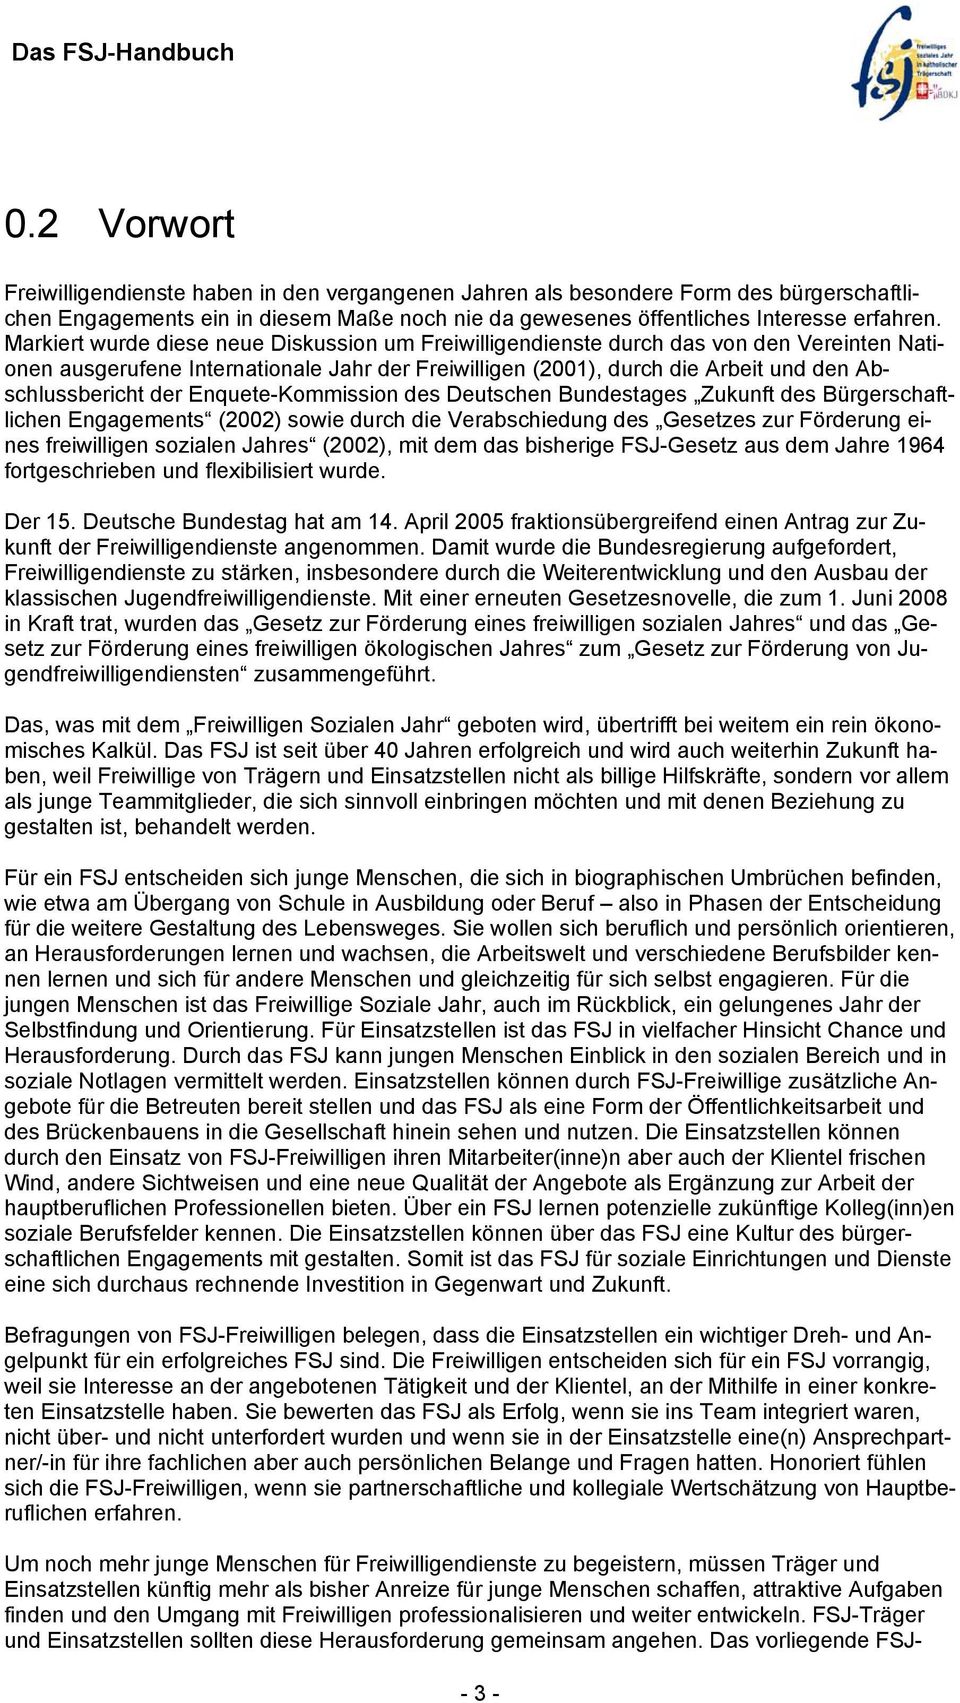 Enquete-Kommission des Deutschen Bundestages Zukunft des Bürgerschaftlichen Engagements (2002) sowie durch die Verabschiedung des Gesetzes zur Förderung eines freiwilligen sozialen Jahres (2002), mit